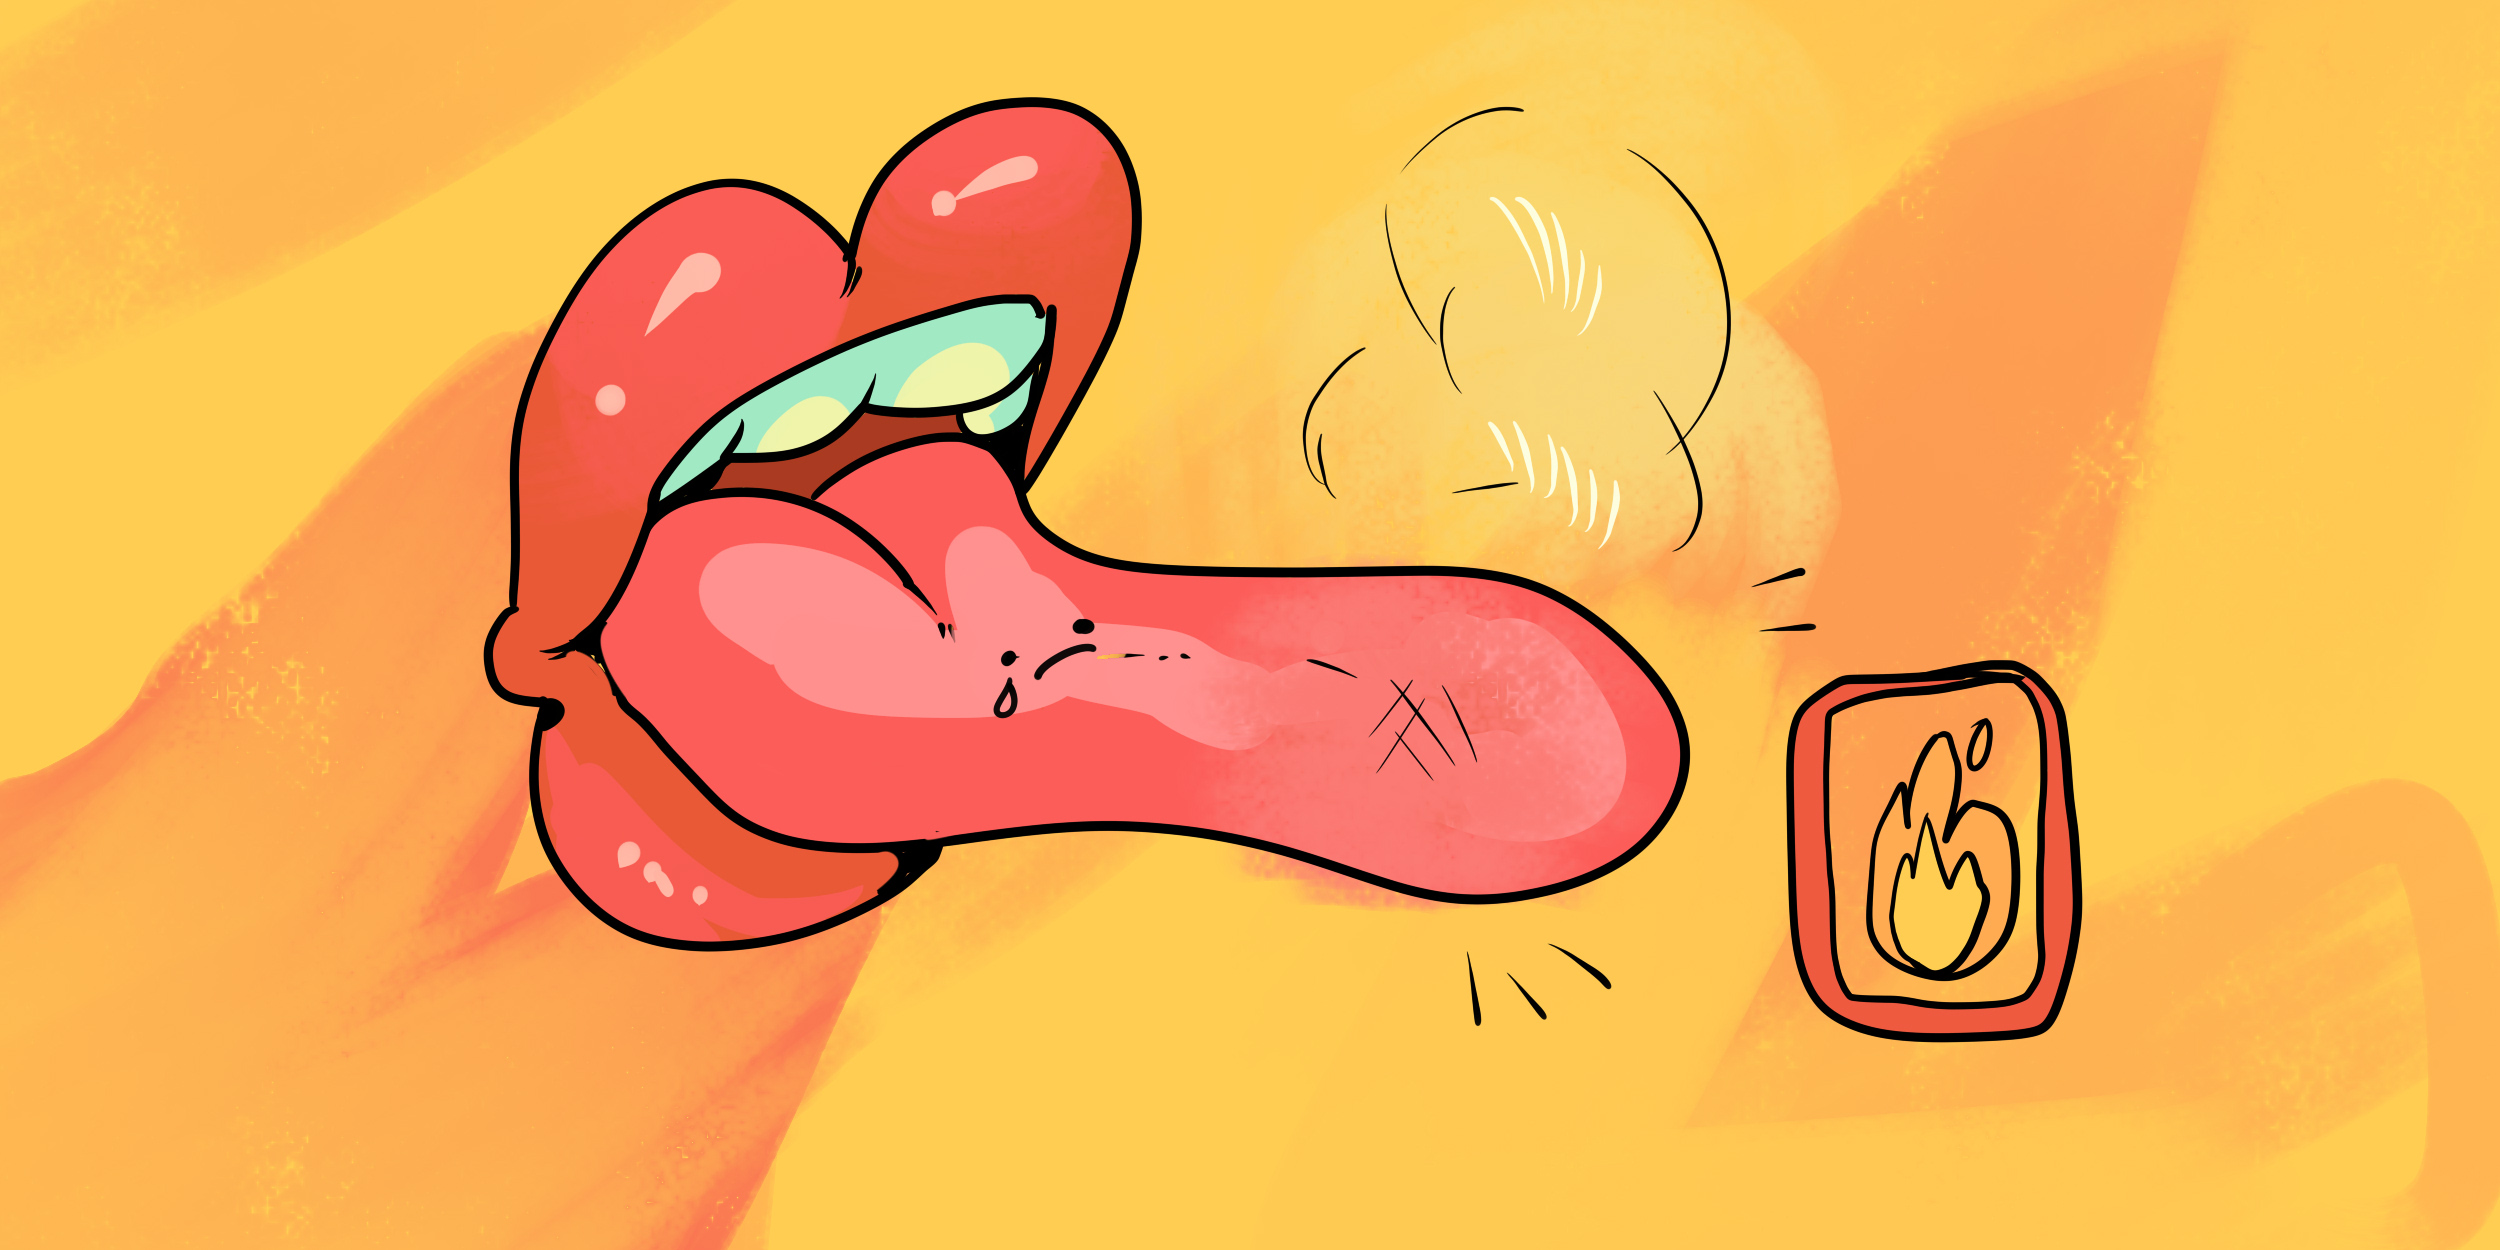 Синдром жжения языка и рта: причины и лечение | Colgate